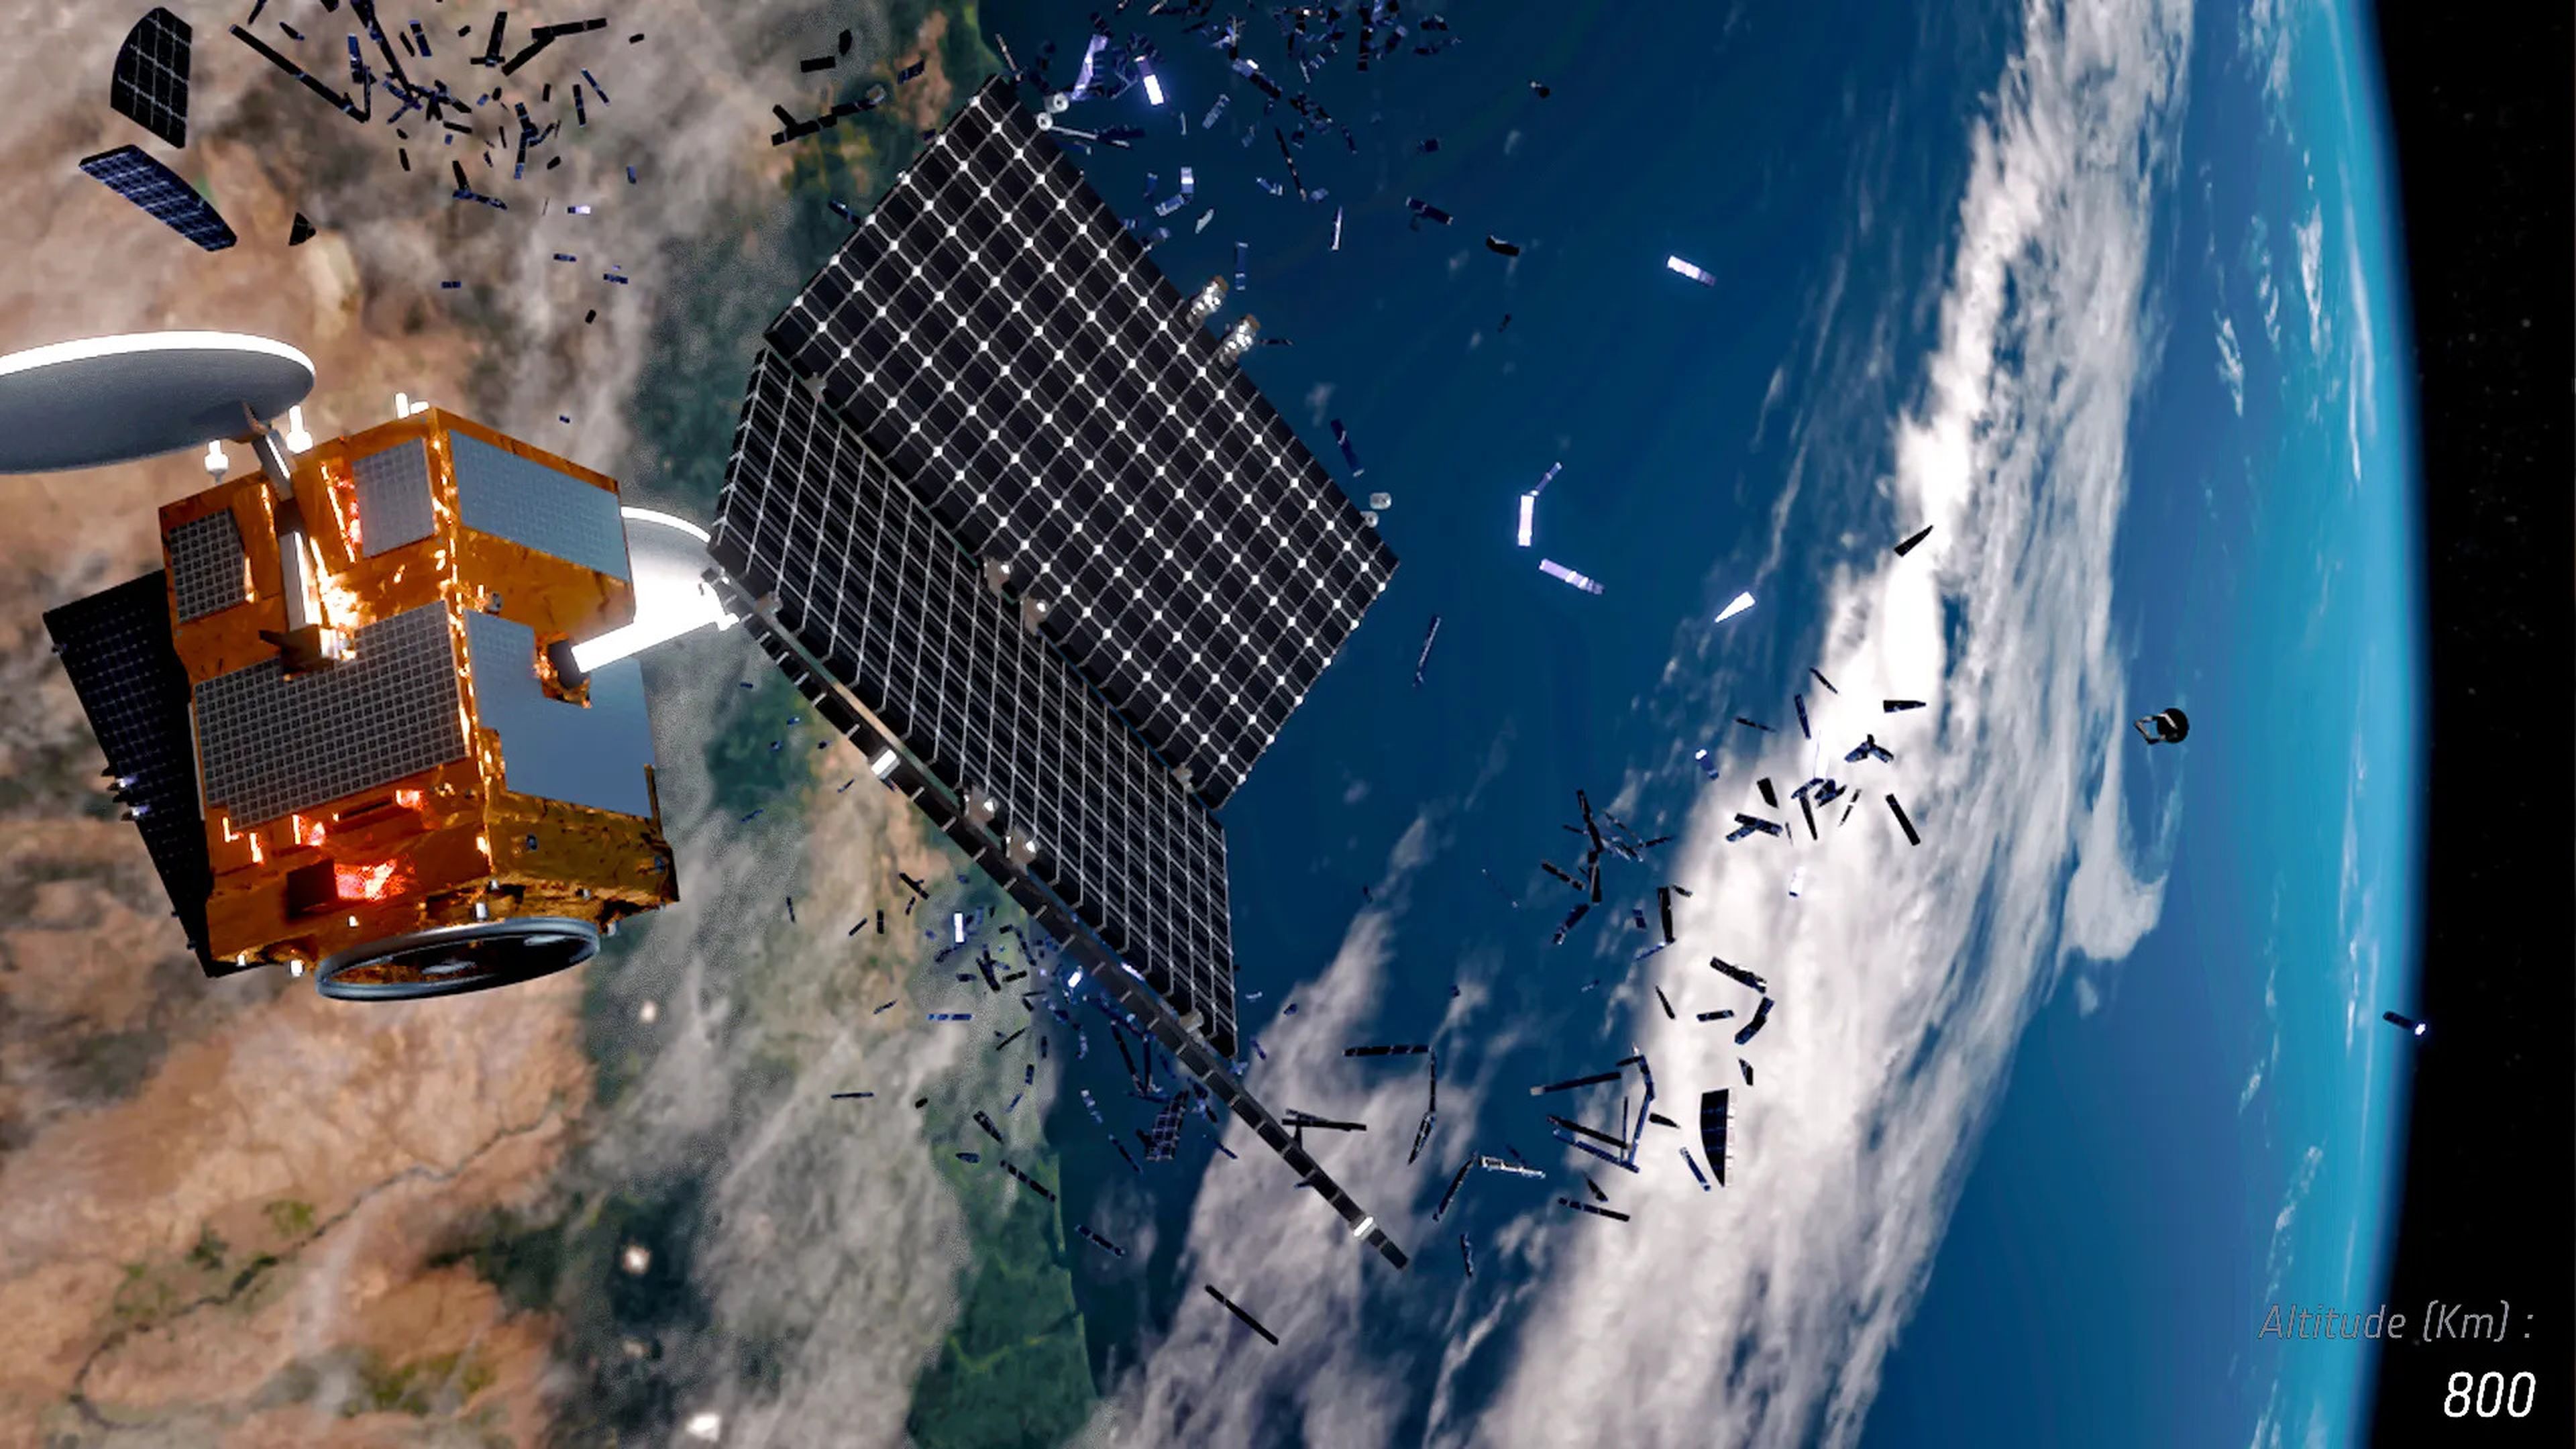 illustration shows satellite shedding bits of metal debris high above earth